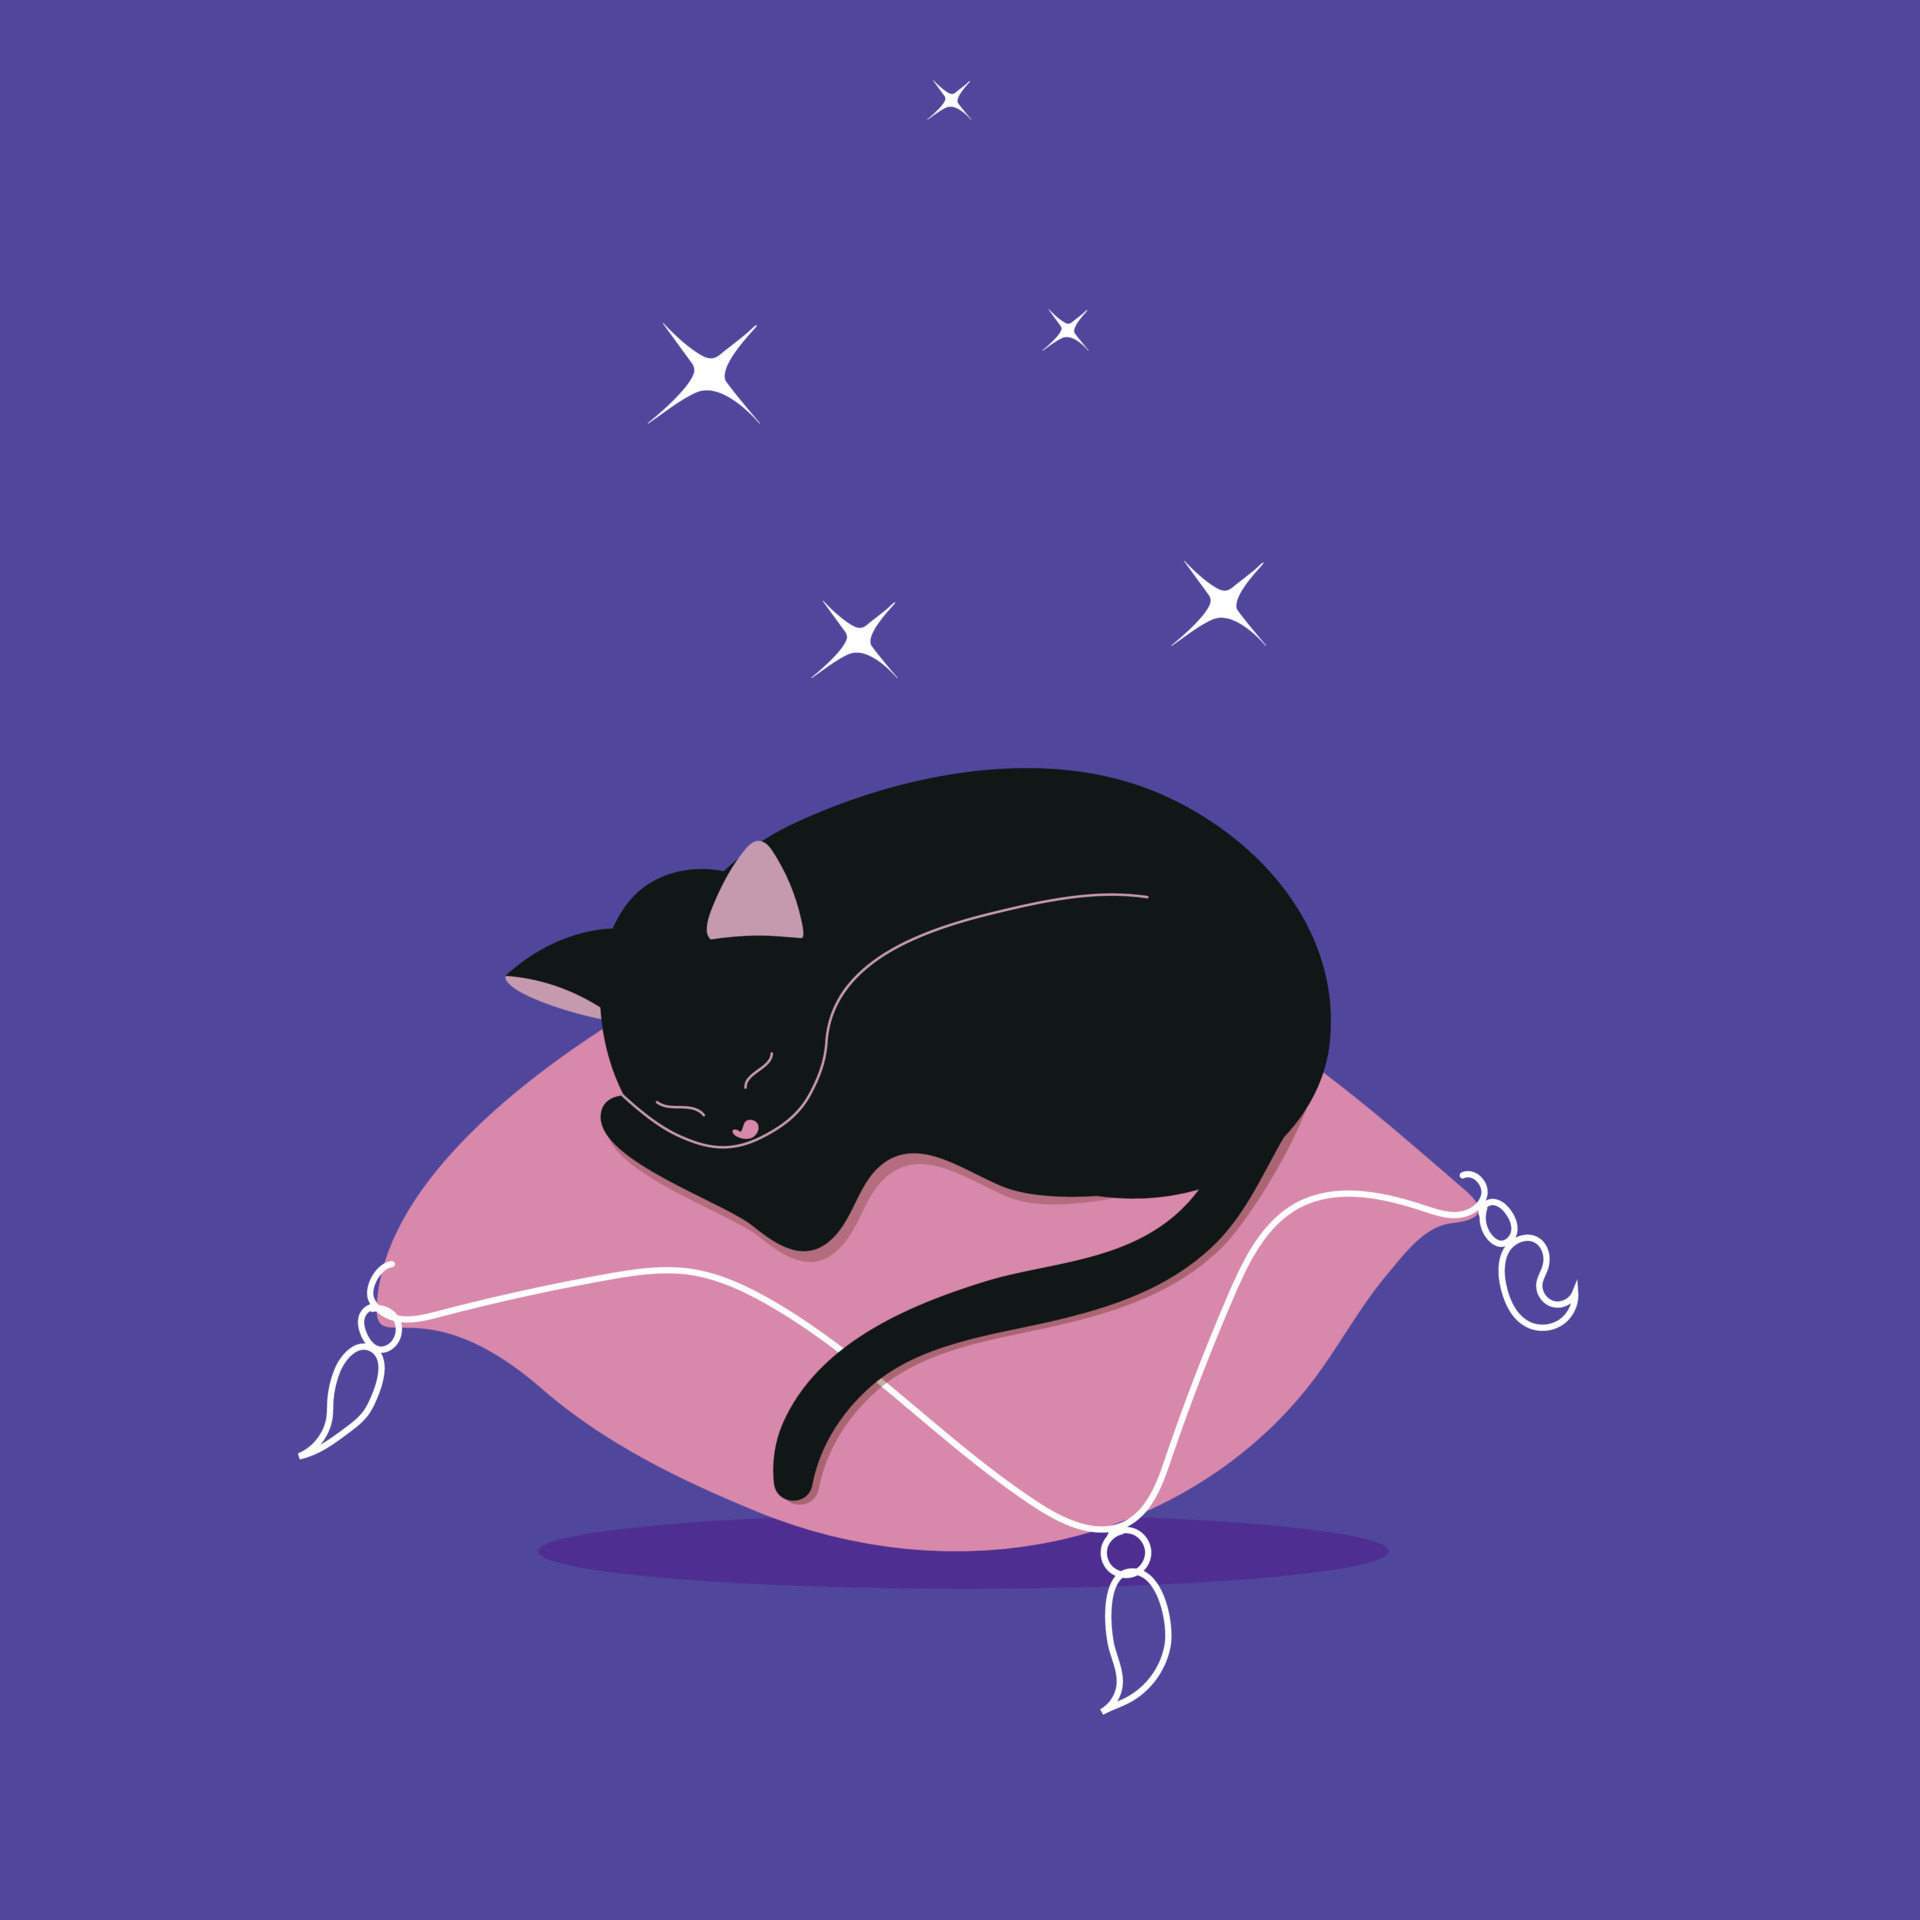 Um Gato Com Gatinhos Fofos, Travesseiros Macios E Acessórios Para Jogos.  Royalty Free SVG, Cliparts, Vetores, e Ilustrações Stock. Image 185498070